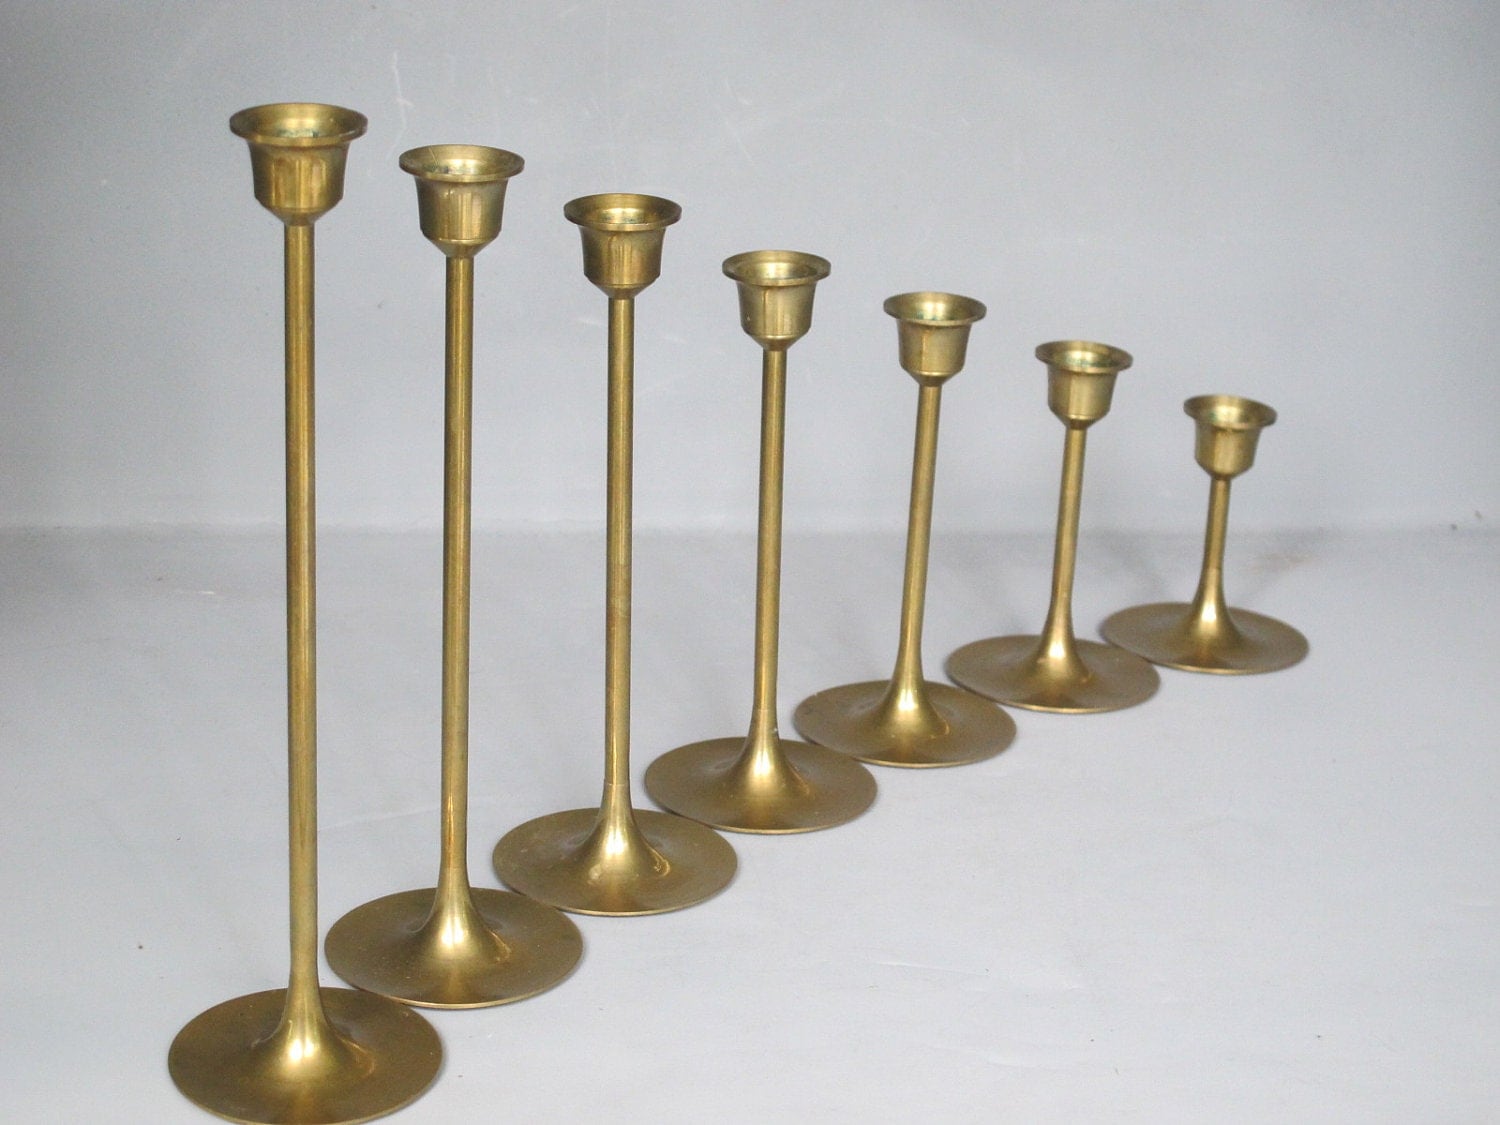 Vintage Set of 7 Brass Candle Holders / Sleek by MilkaCervenka